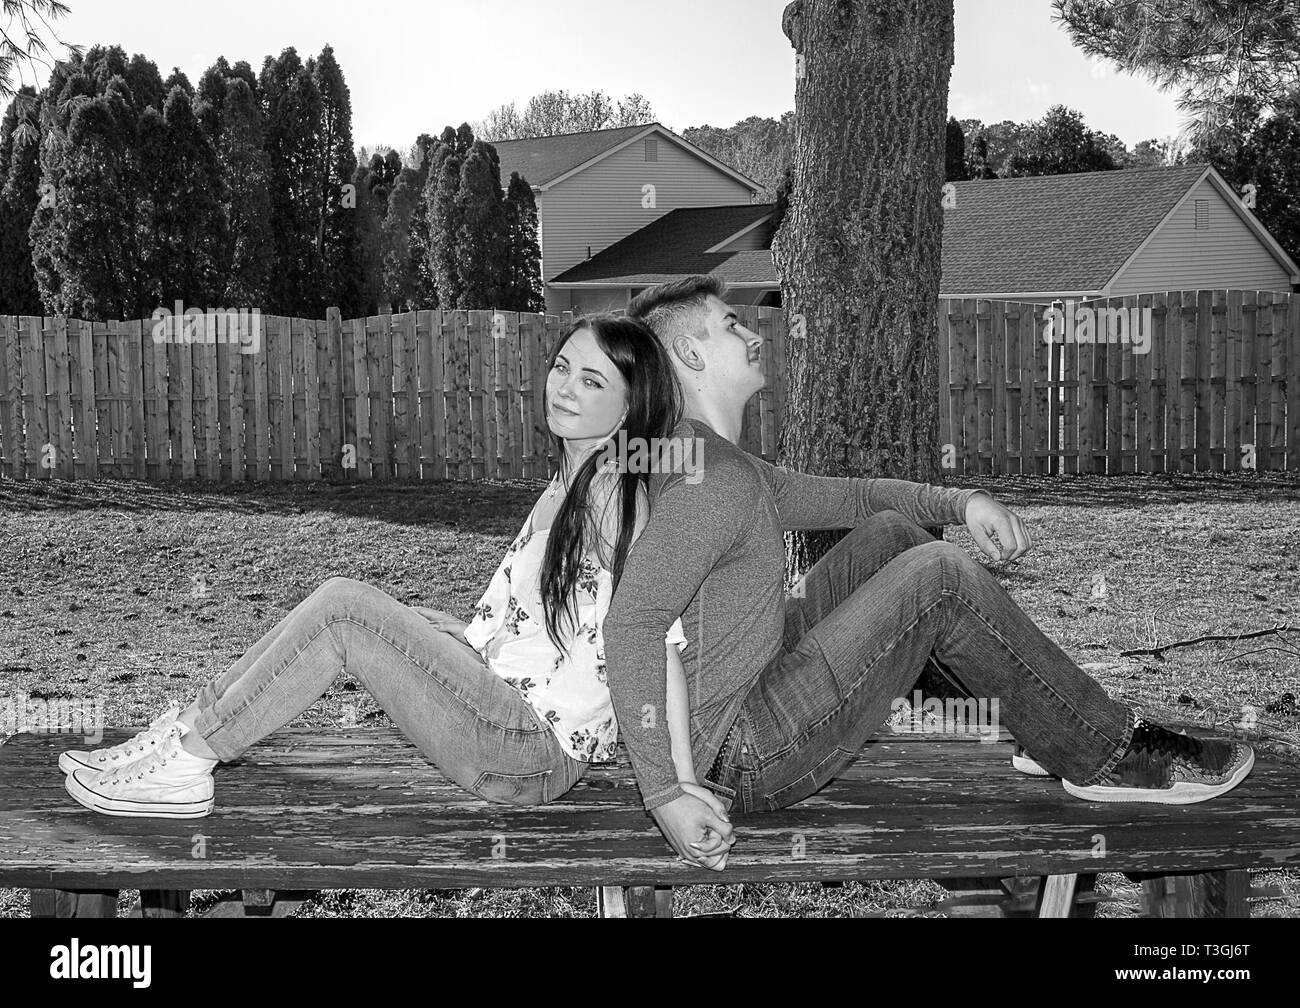 Caucasian matura in amore rilassante mentre è seduto sulla parte superiore del picnic in grado nel cortile interno con le spalle all'altro. Immagine in bianco e nero. Foto Stock